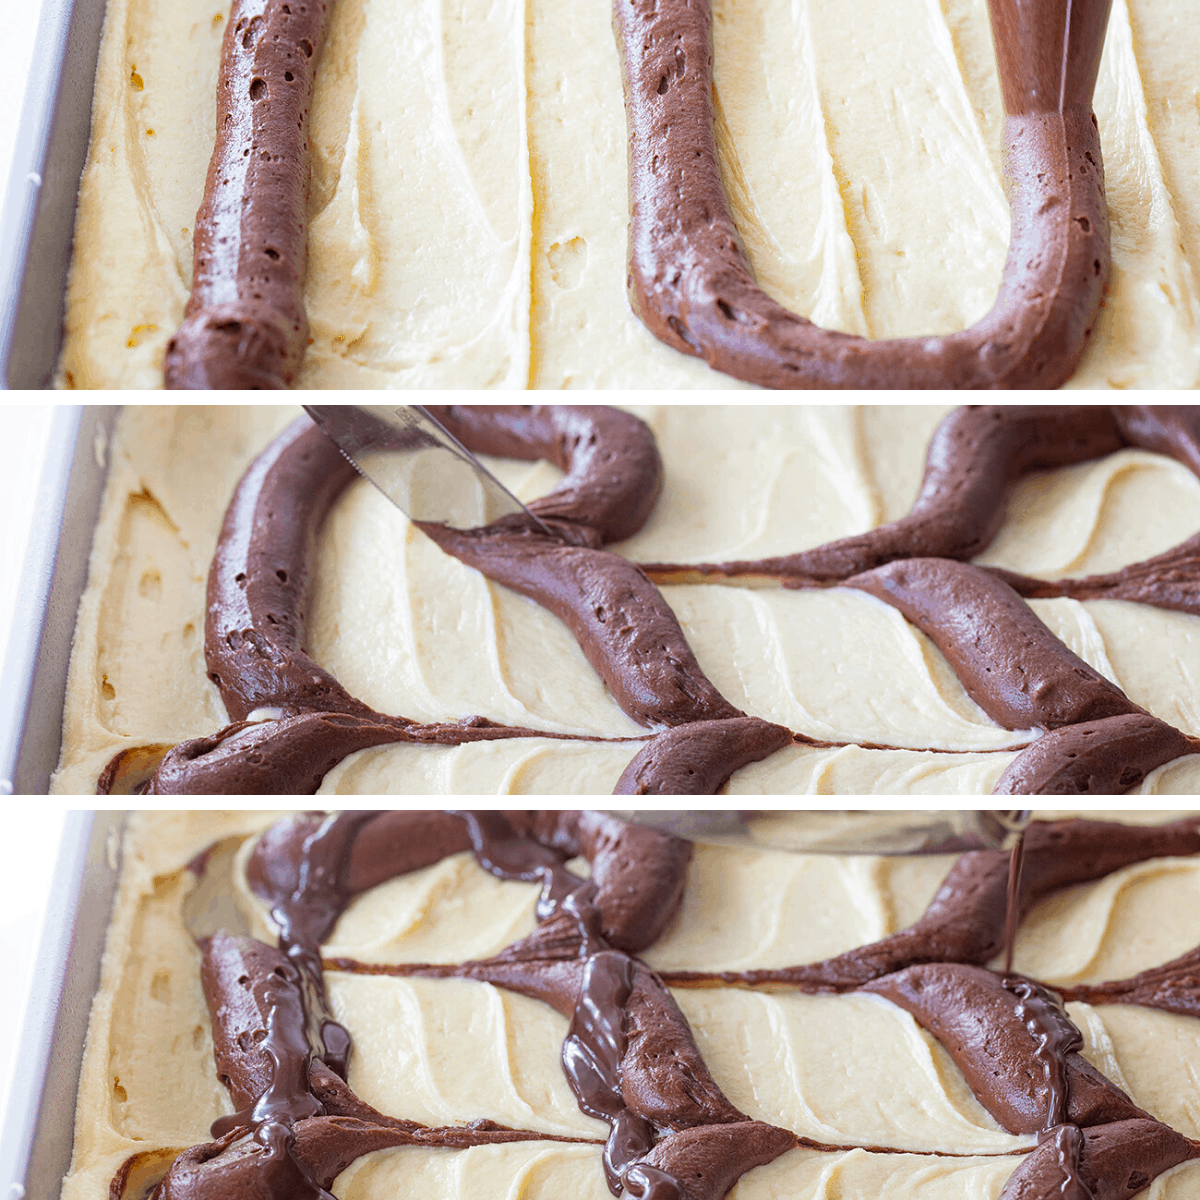 大理石蛋糕工艺图像如何添加巧克力到香草蛋糕